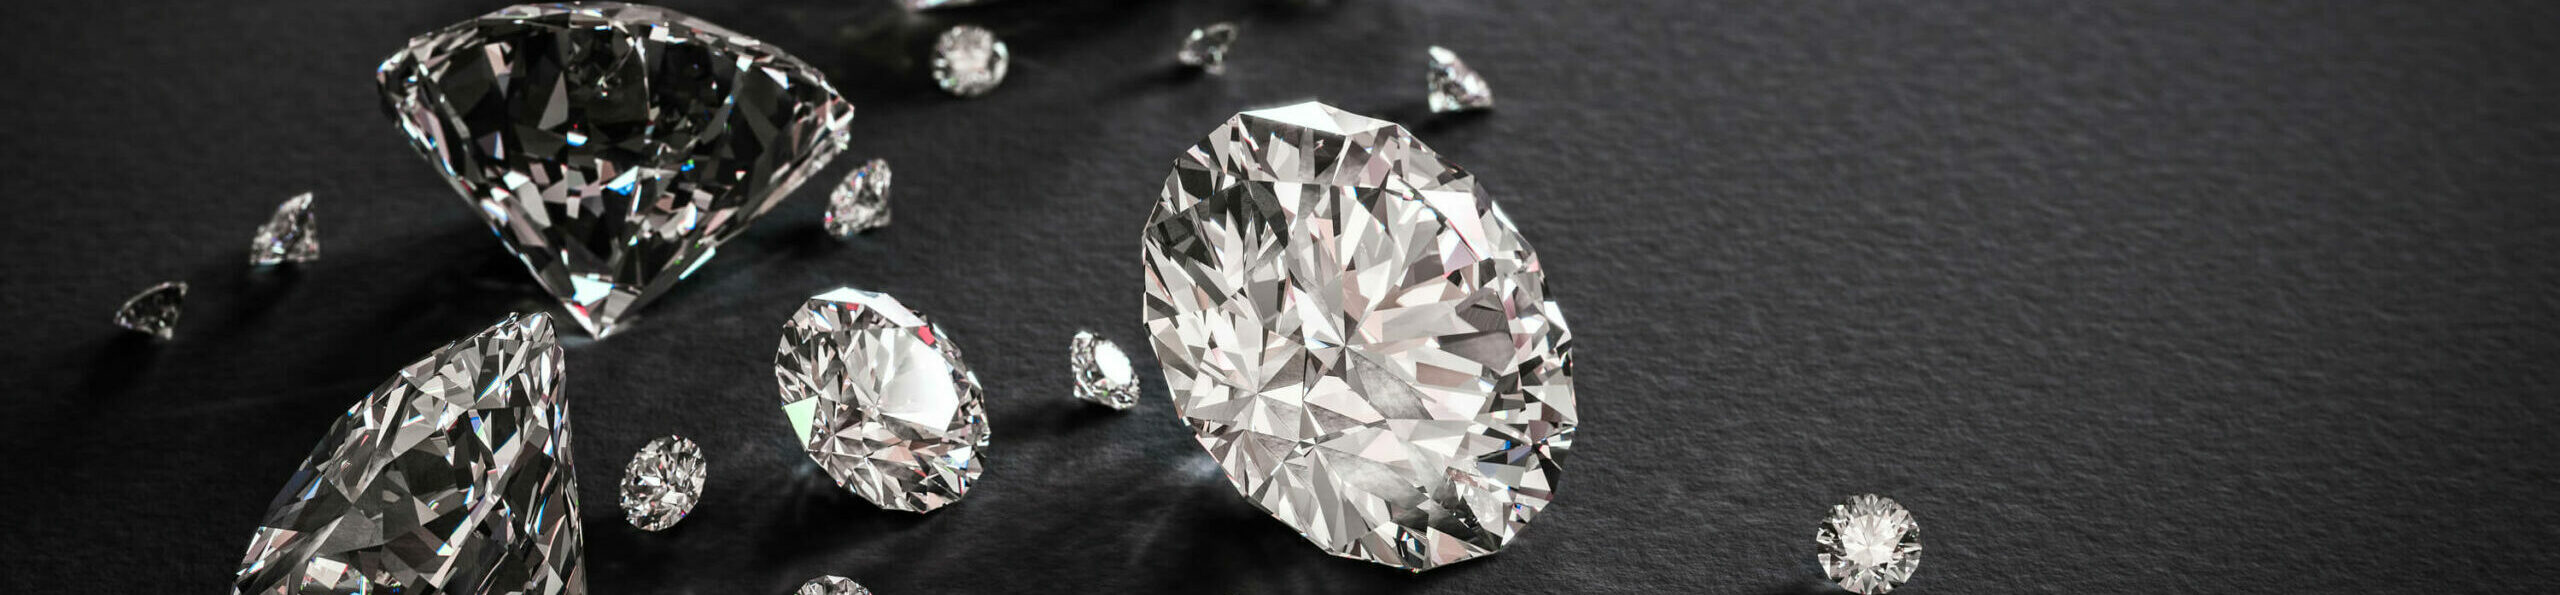 Mesterséges gyémánt, szintetikus gyémánt